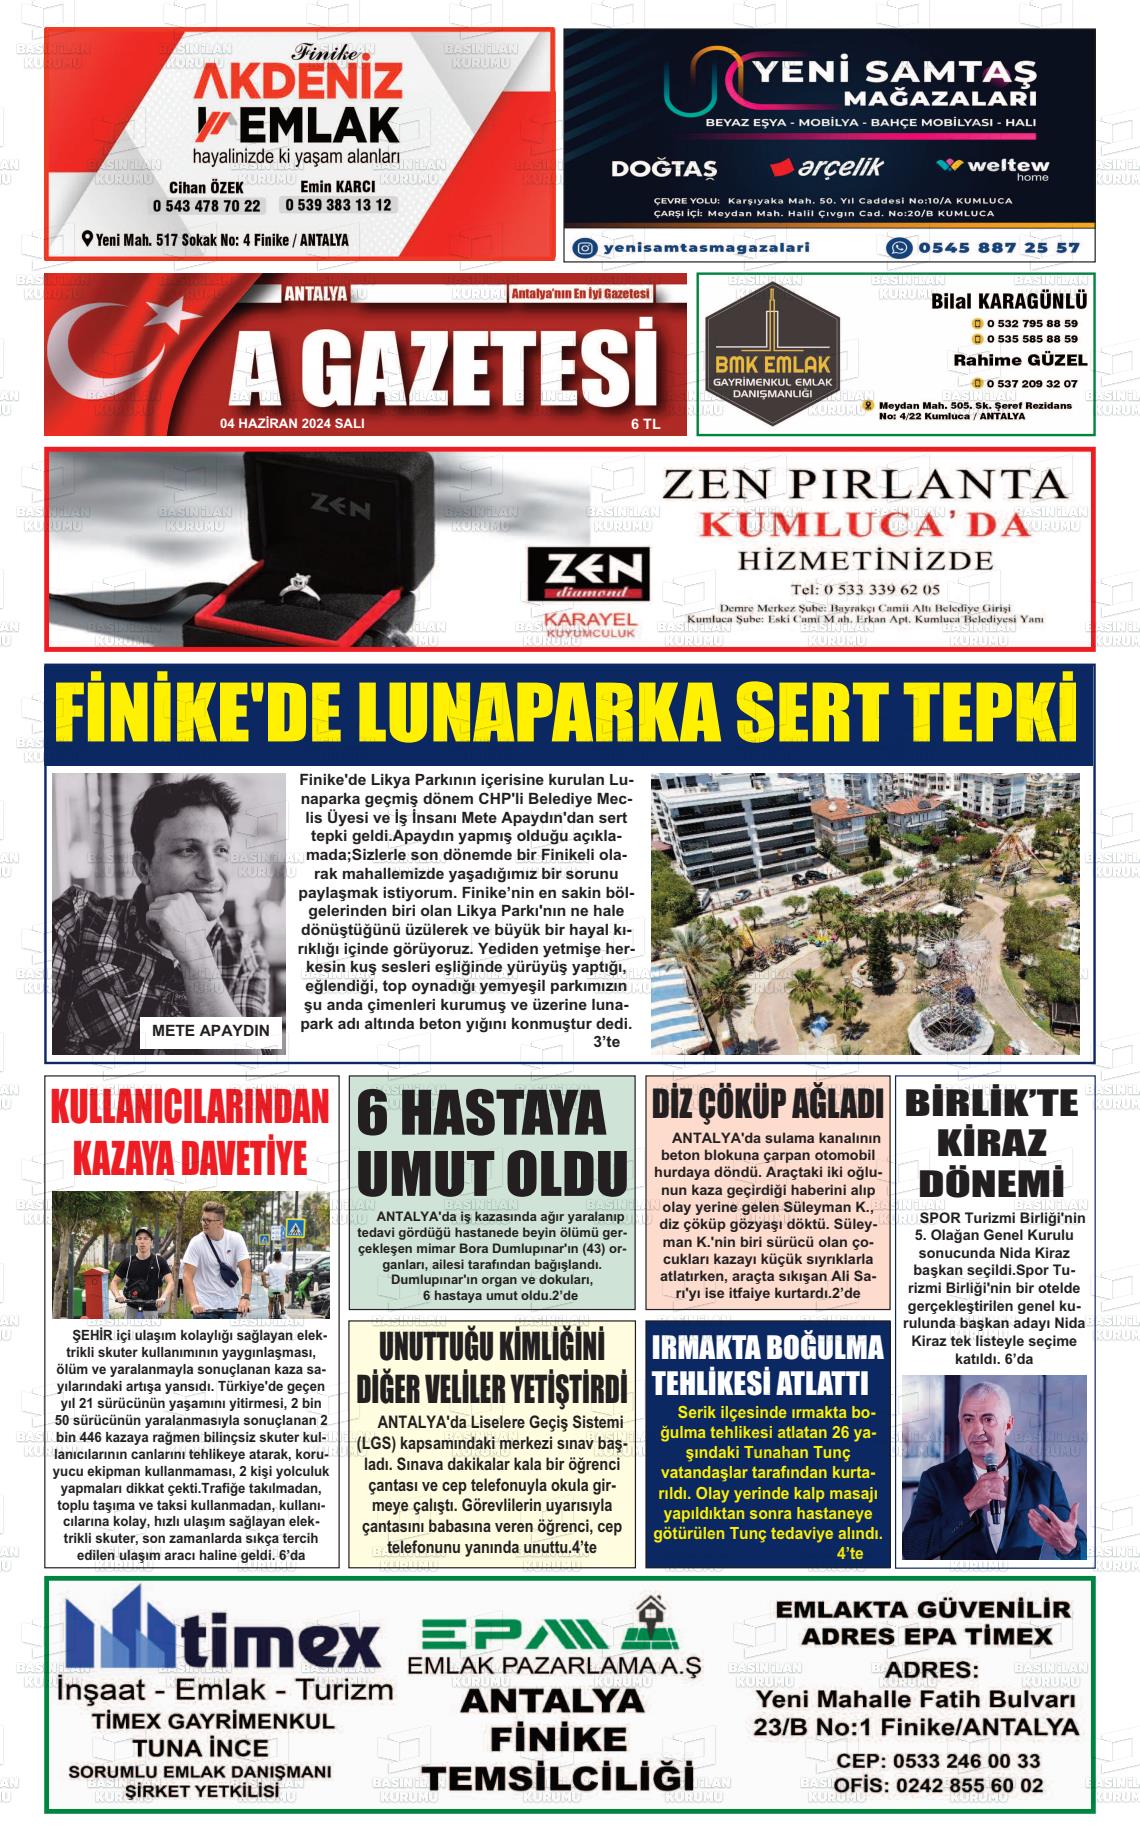 ANTALYA A GAZETESİ Gazetesi